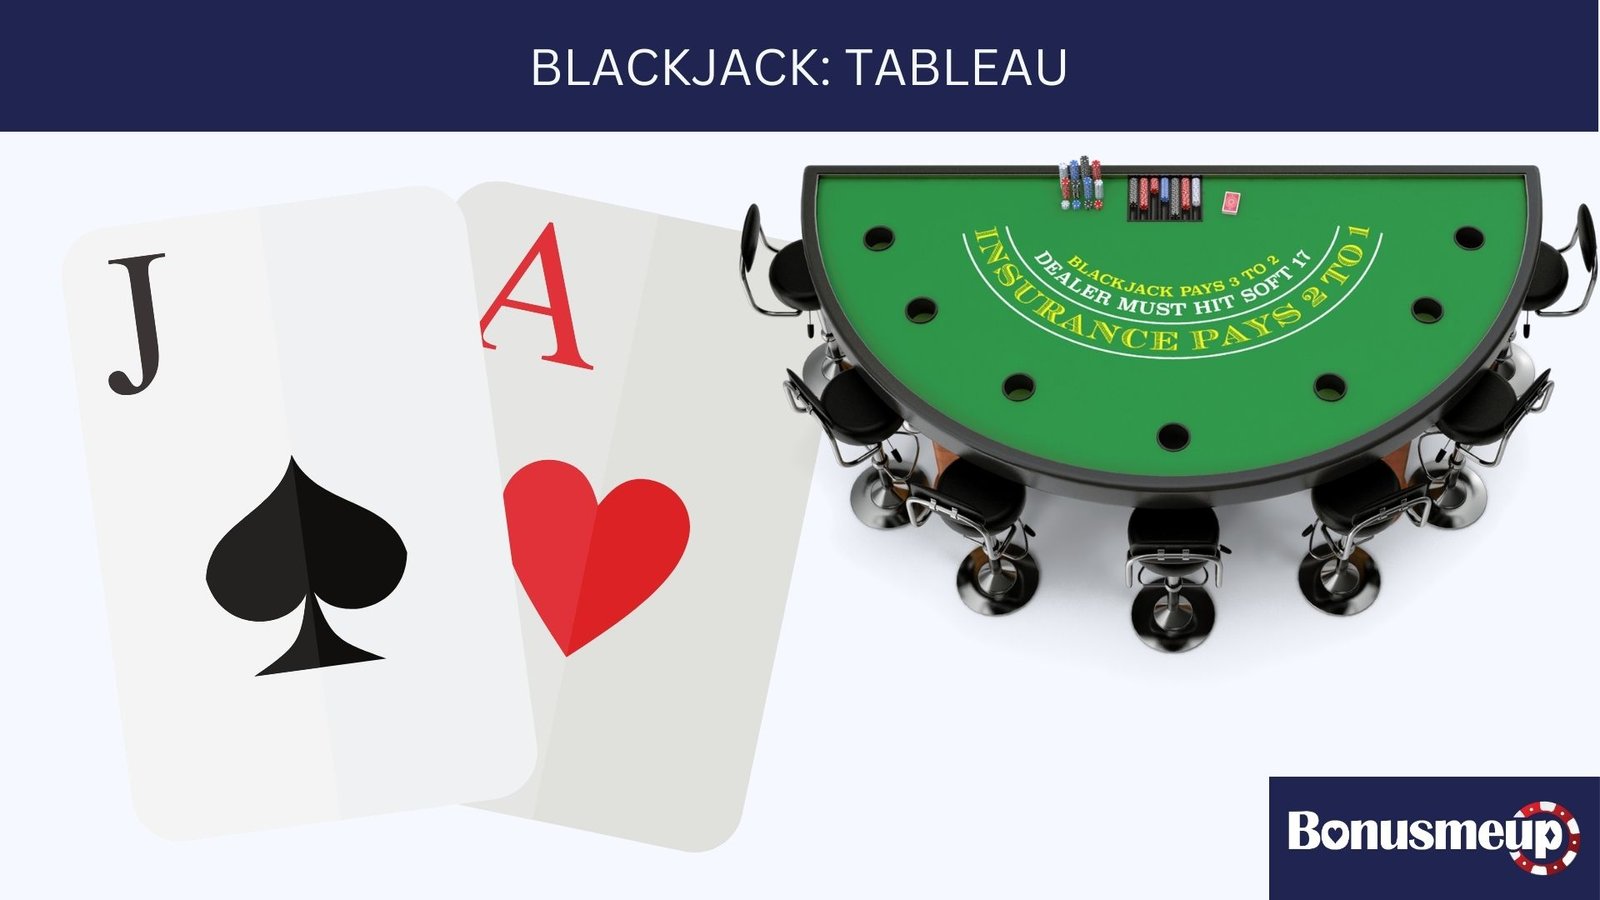 Le tableau blackjack: Comment peut-il vous faire gagner plus souvent ?